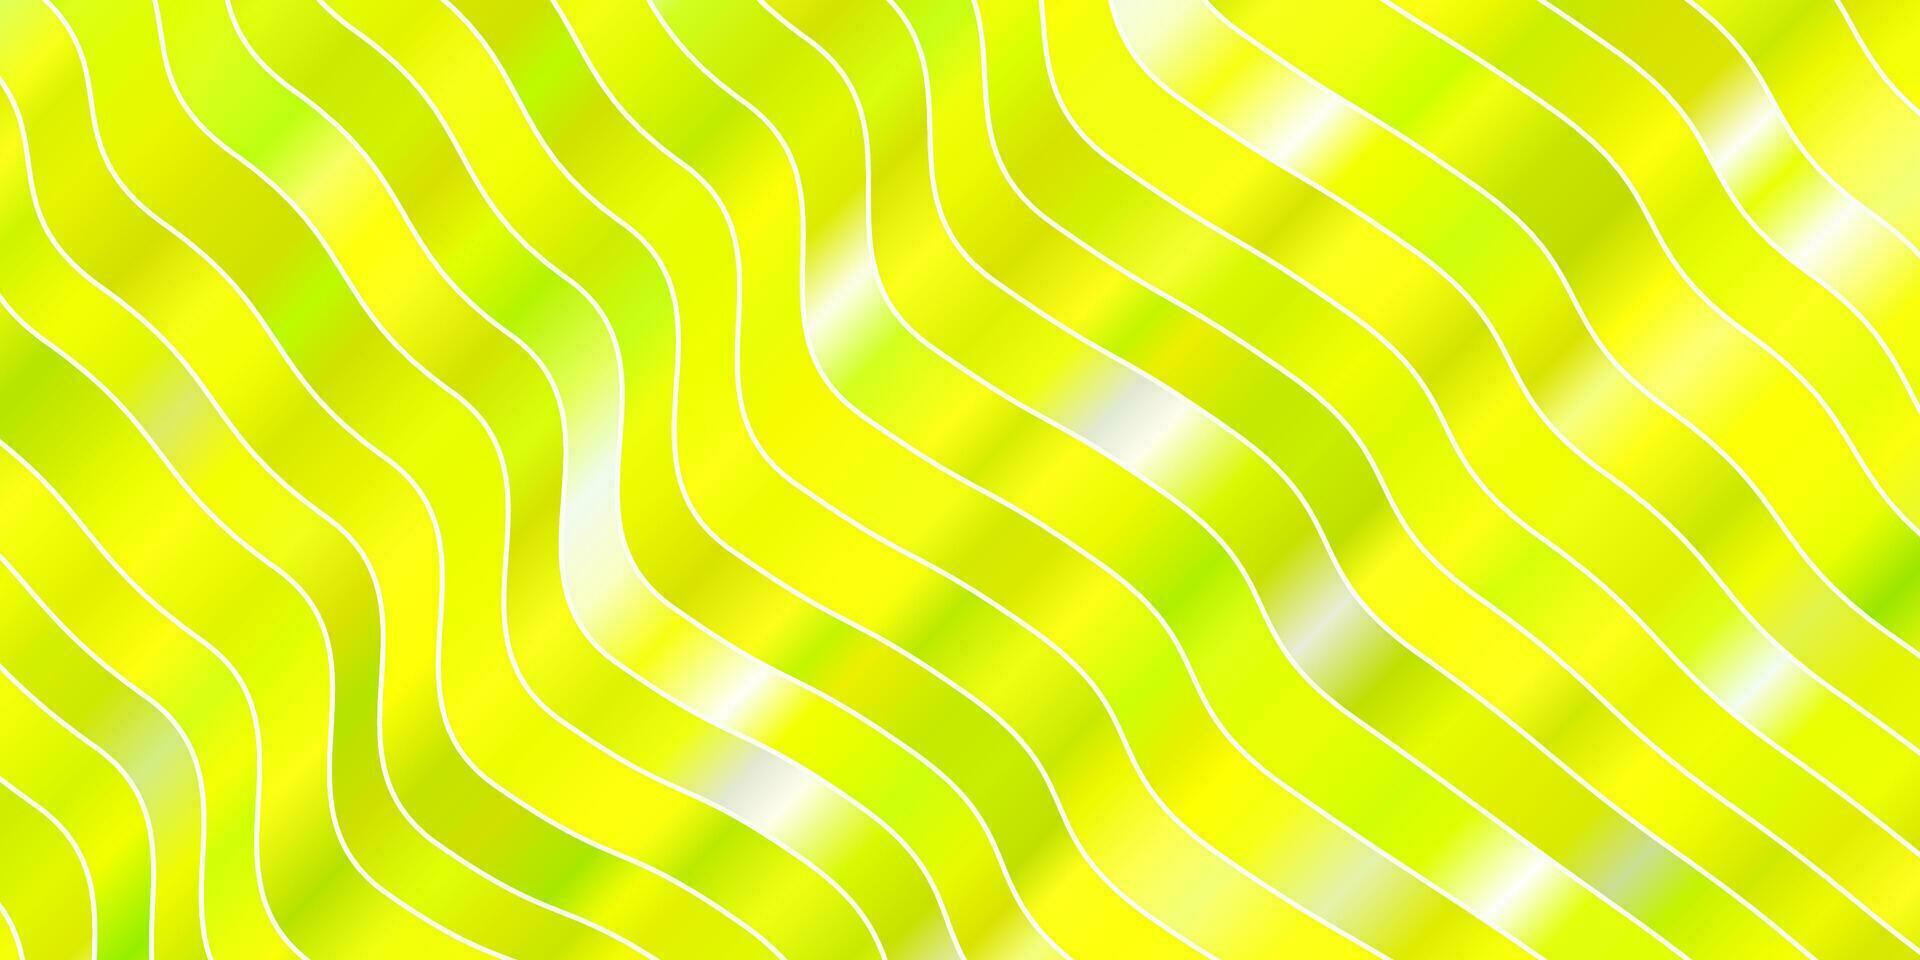 ljusgrönt, gult vektormönster med kurvor. vektor